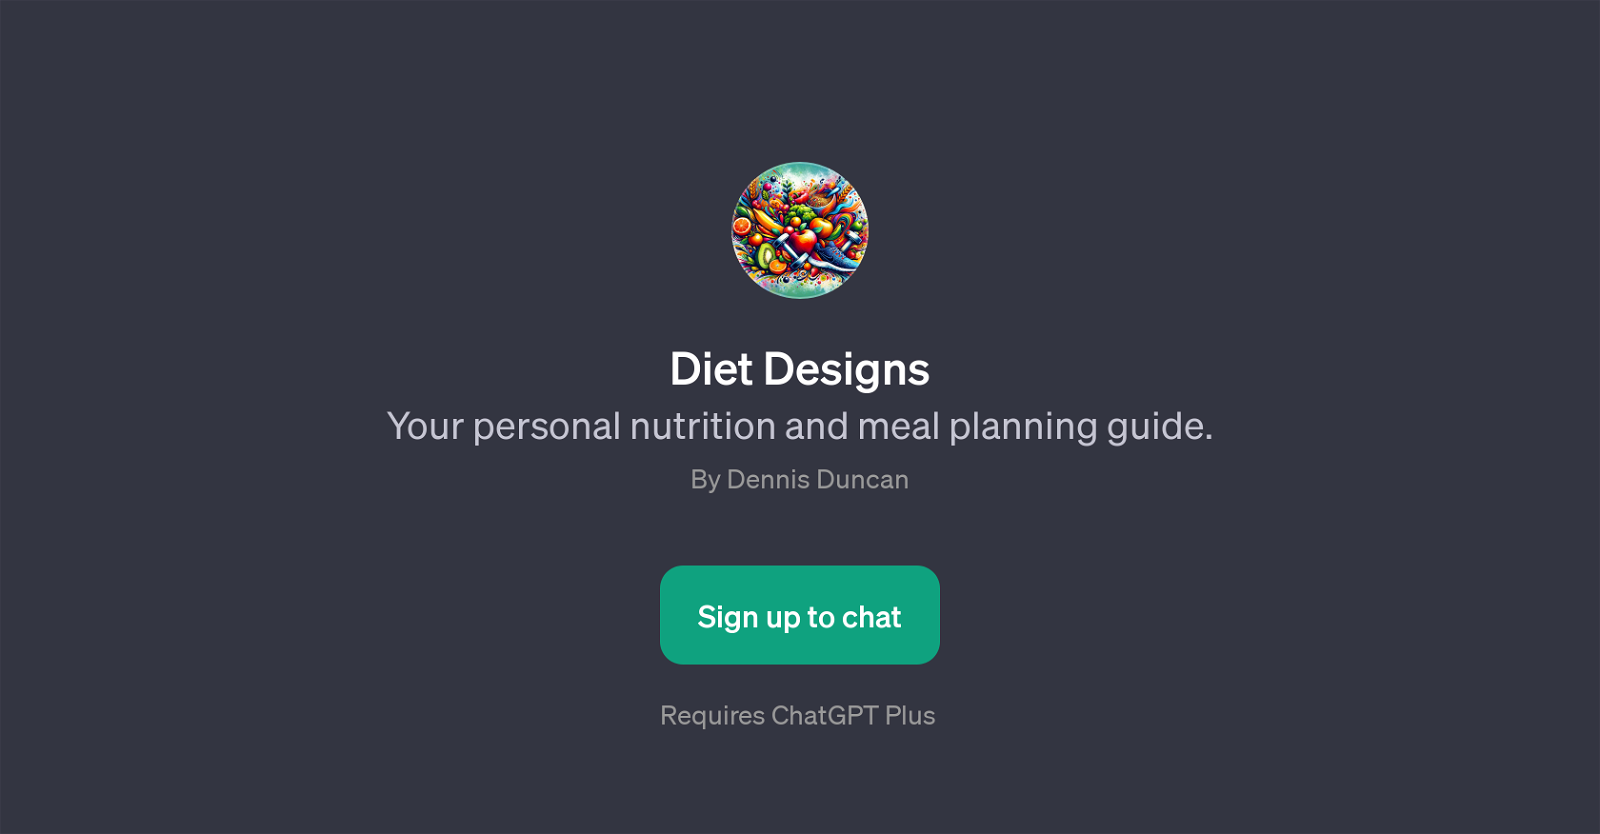 Diet Designs website